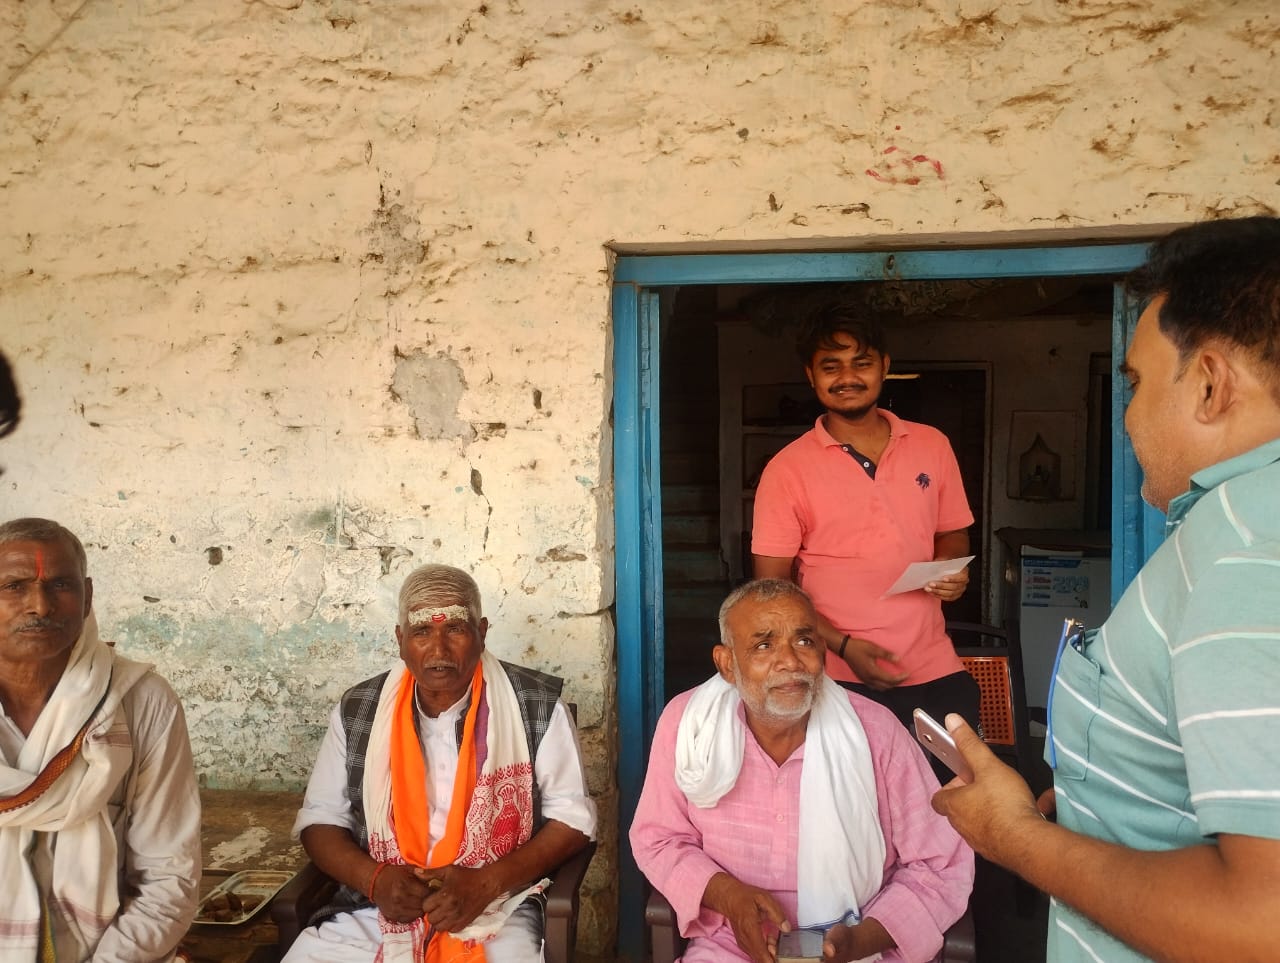 चुनाव परिणाम चाहे जो भी हो, जनता के बीच बना रहूँगा: दौलत सिंह